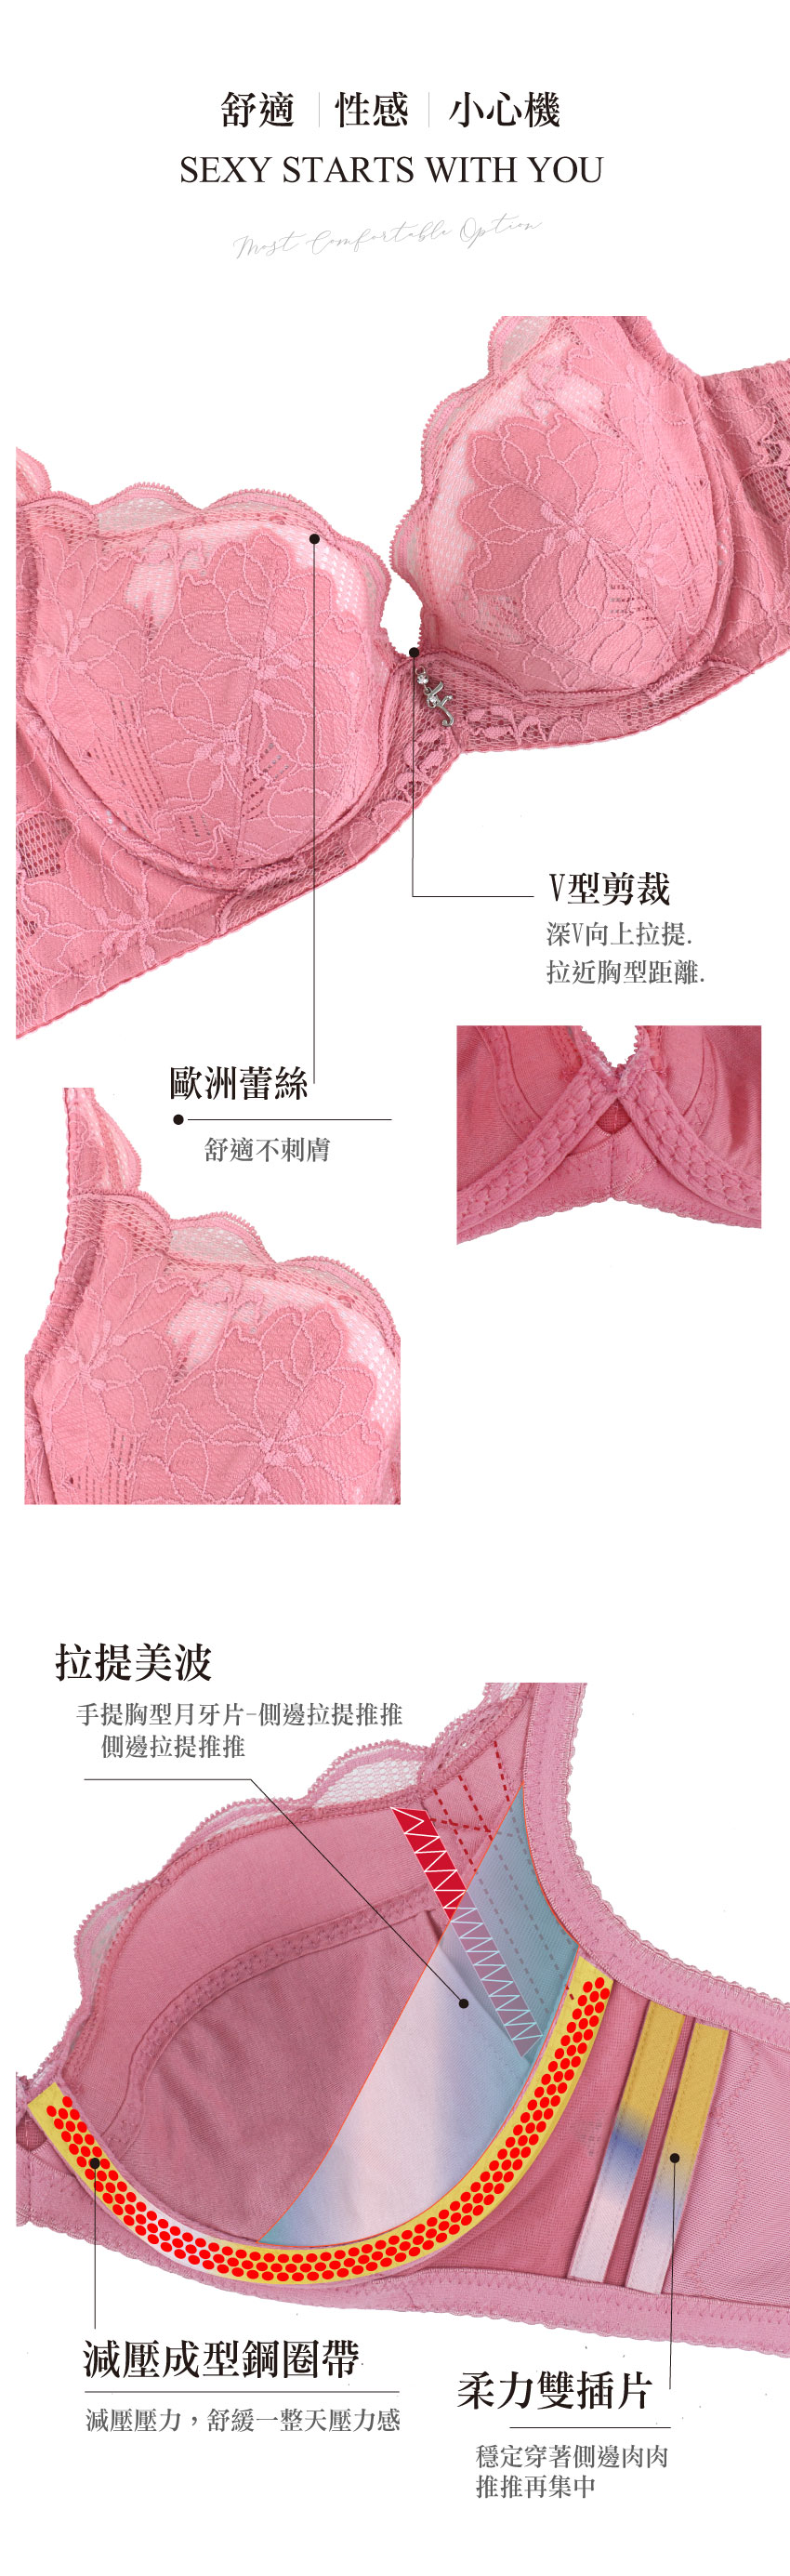 美藝系列 奈米涼感 環保健康素材 機能內衣BCDE罩杯(蜜藕色)